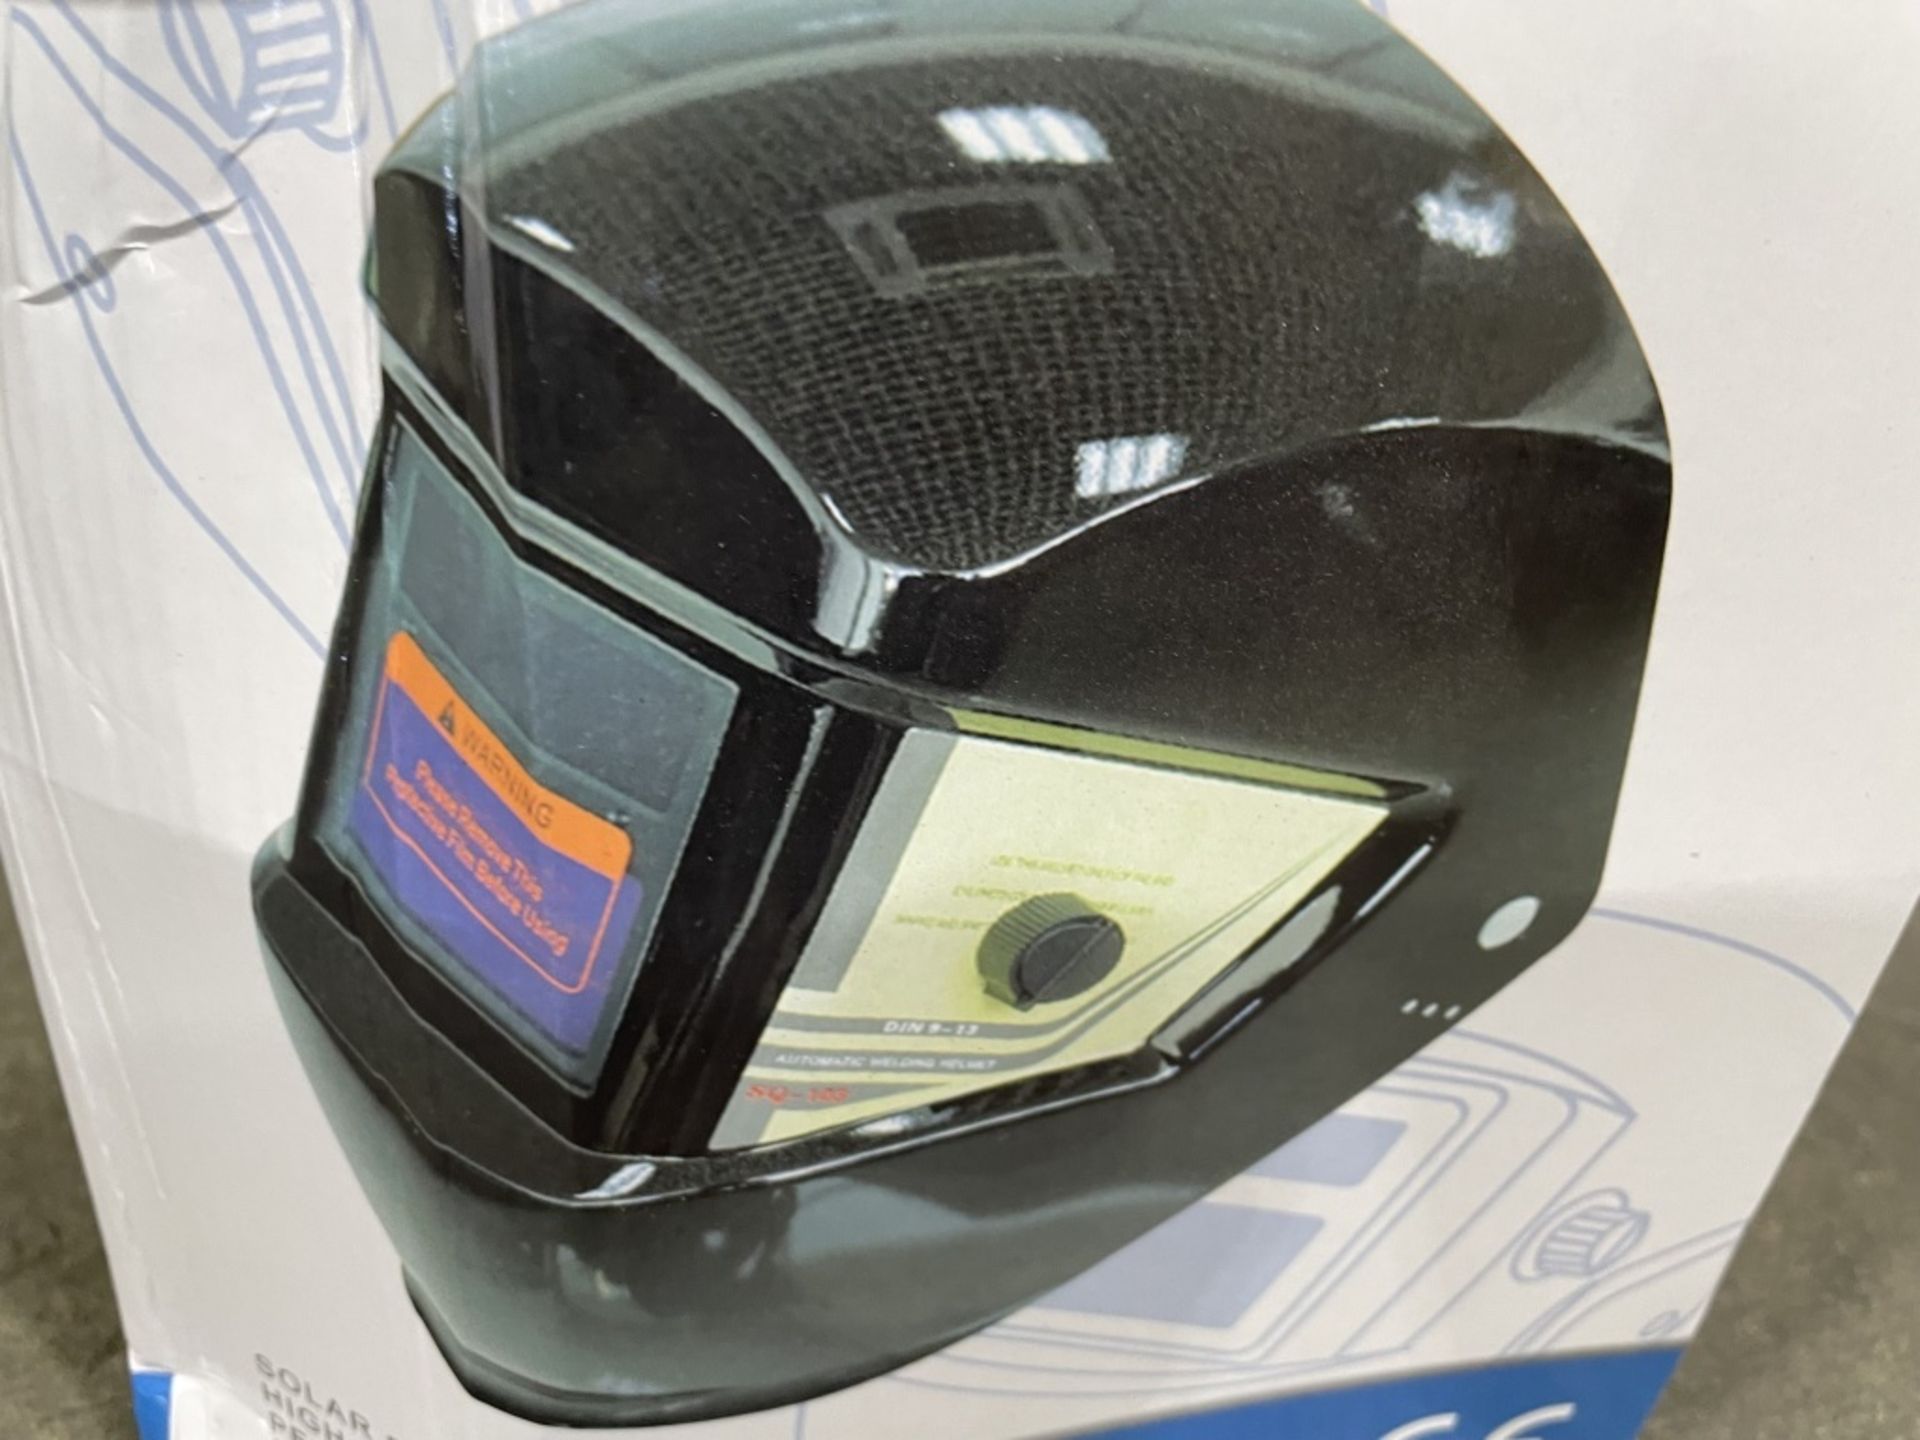 2021 Auto Darkening Welding Helmet - Image 2 of 3